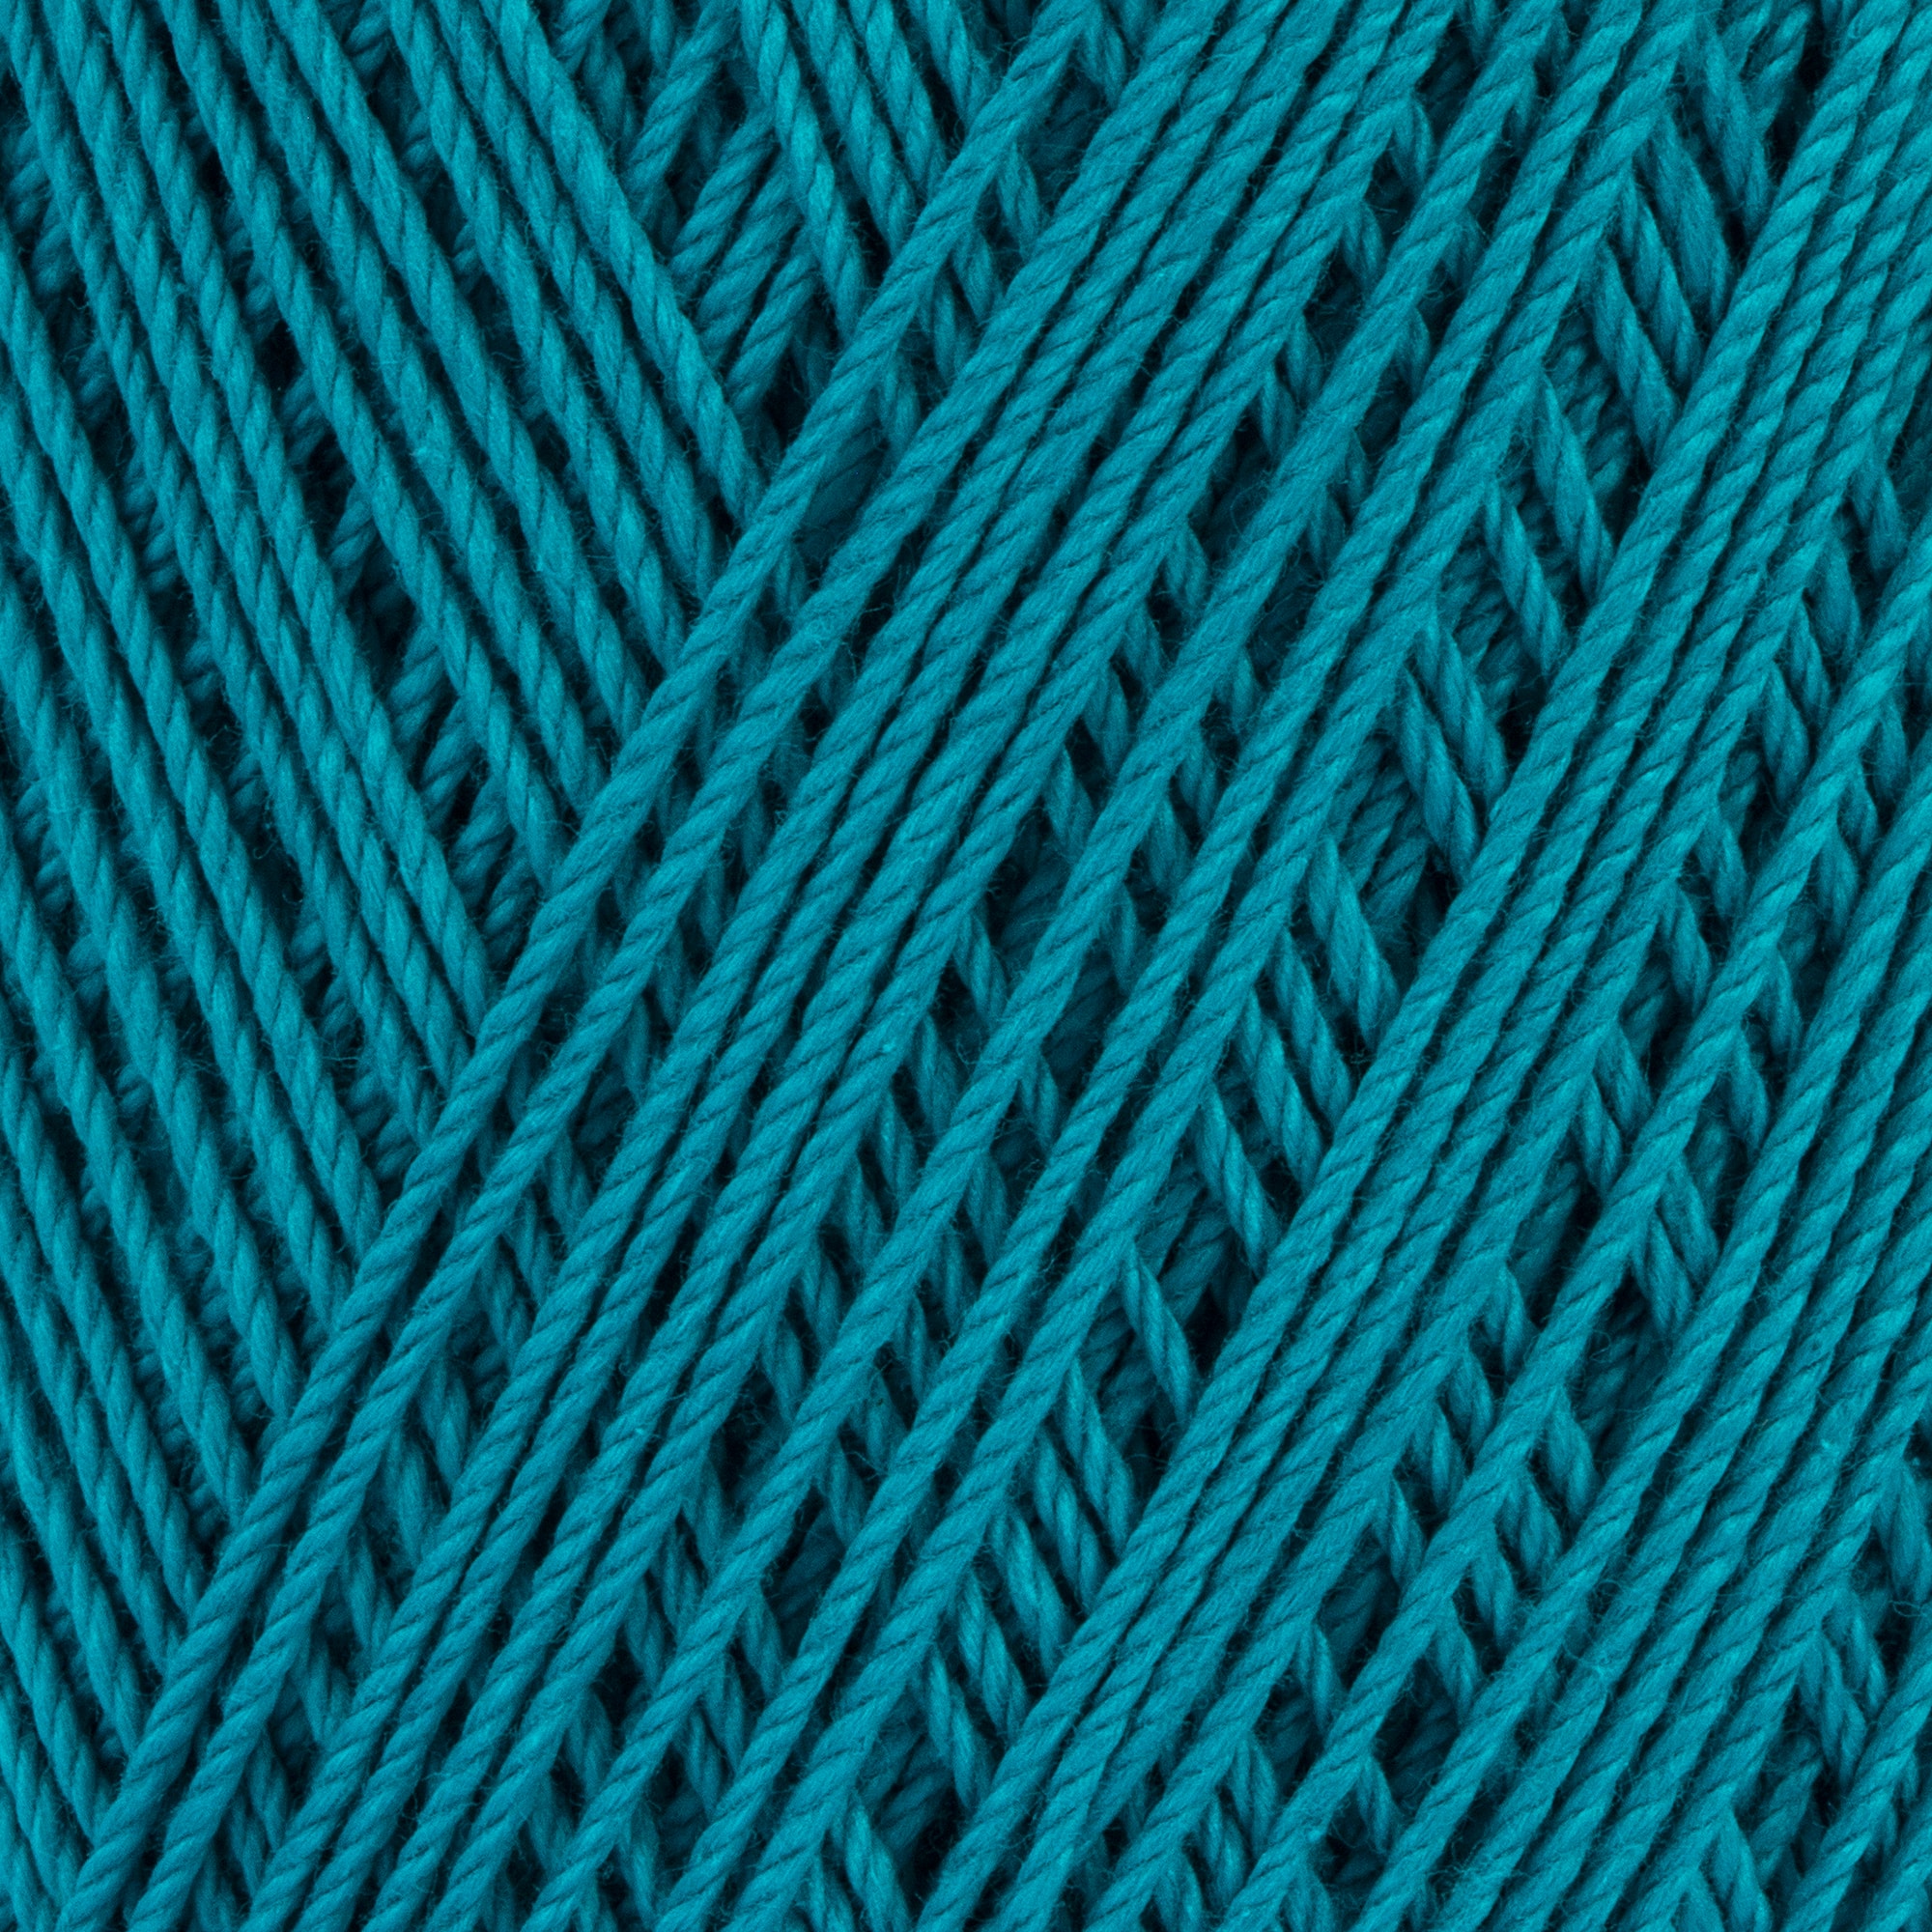 Aunt Lydia's Fashion Crochet Thread Size 3 Colors - Plum Warm Blue